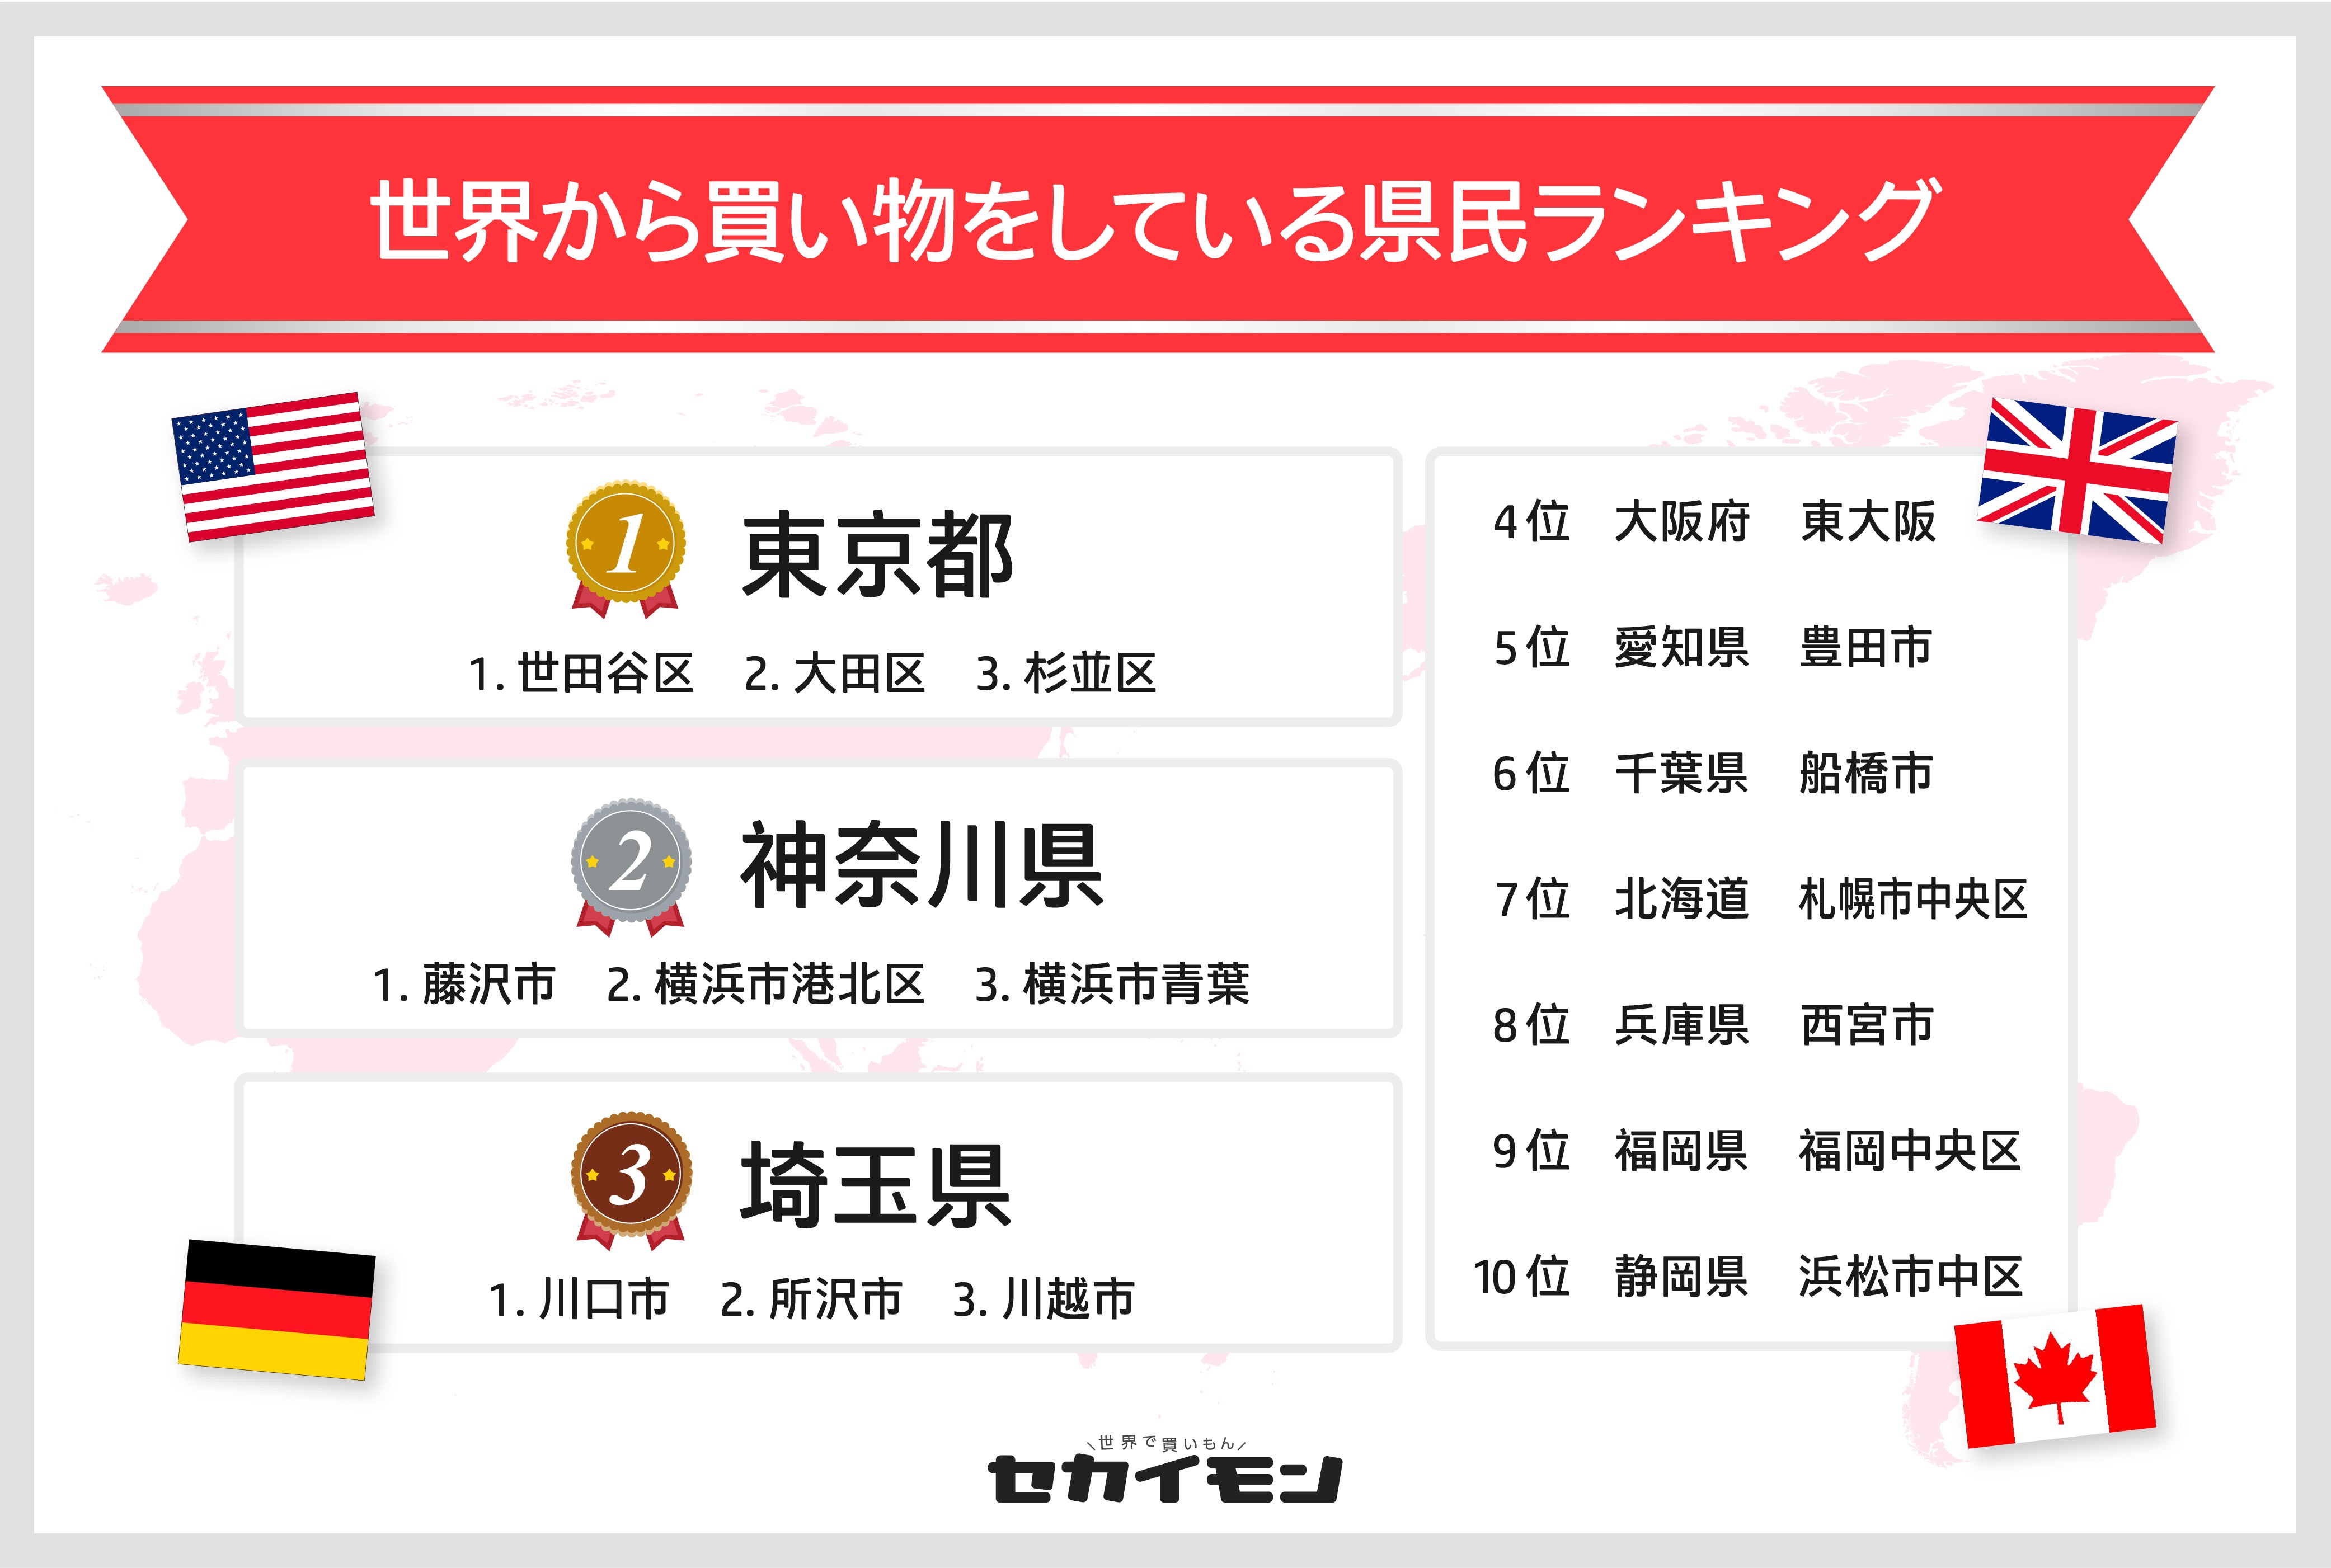 日本にいながら海外の商品が簡単に手に入るショッピングサイトセカイモンから 海外商品を多く買っている県民ランキング21 を発表 Beenos株式会社のプレスリリース